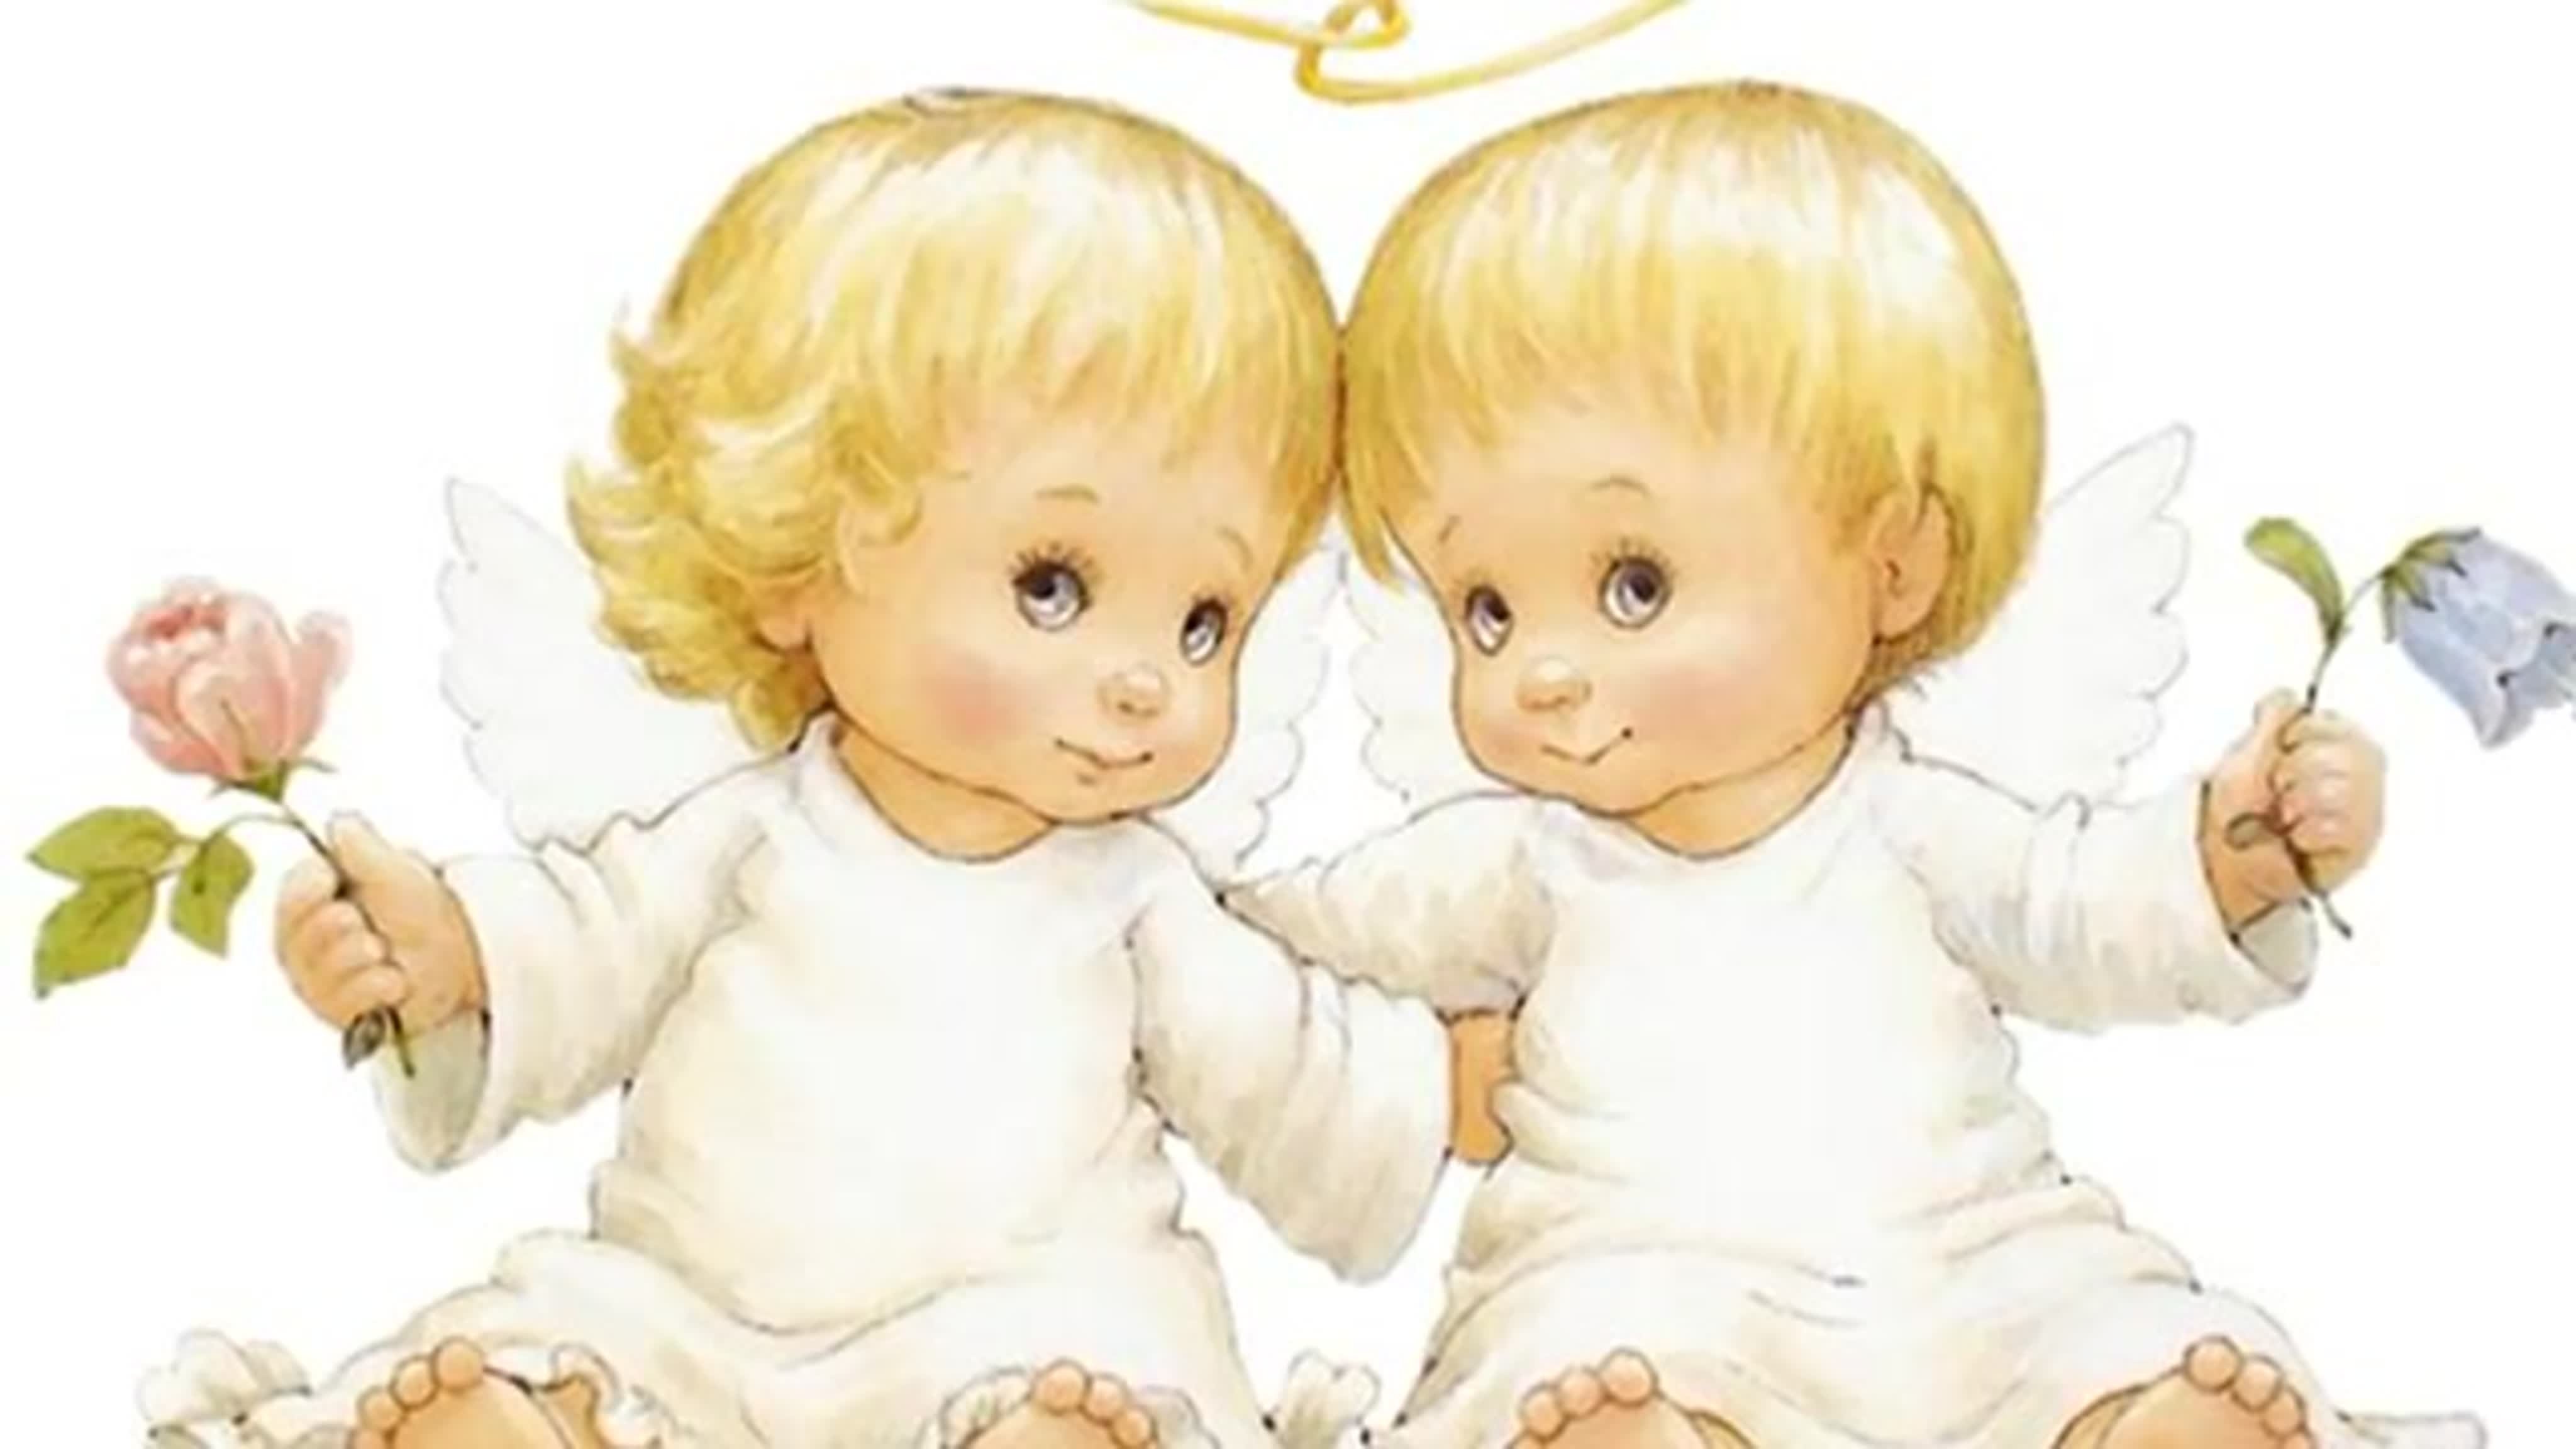 С днем рождения картинки двойняшкам мальчикам. С днём рождения двойняшек. Открытка двойняшкам. С днём рождения двойгяшки. Открытки с днём рождения двойняшек мальчика и девочки.